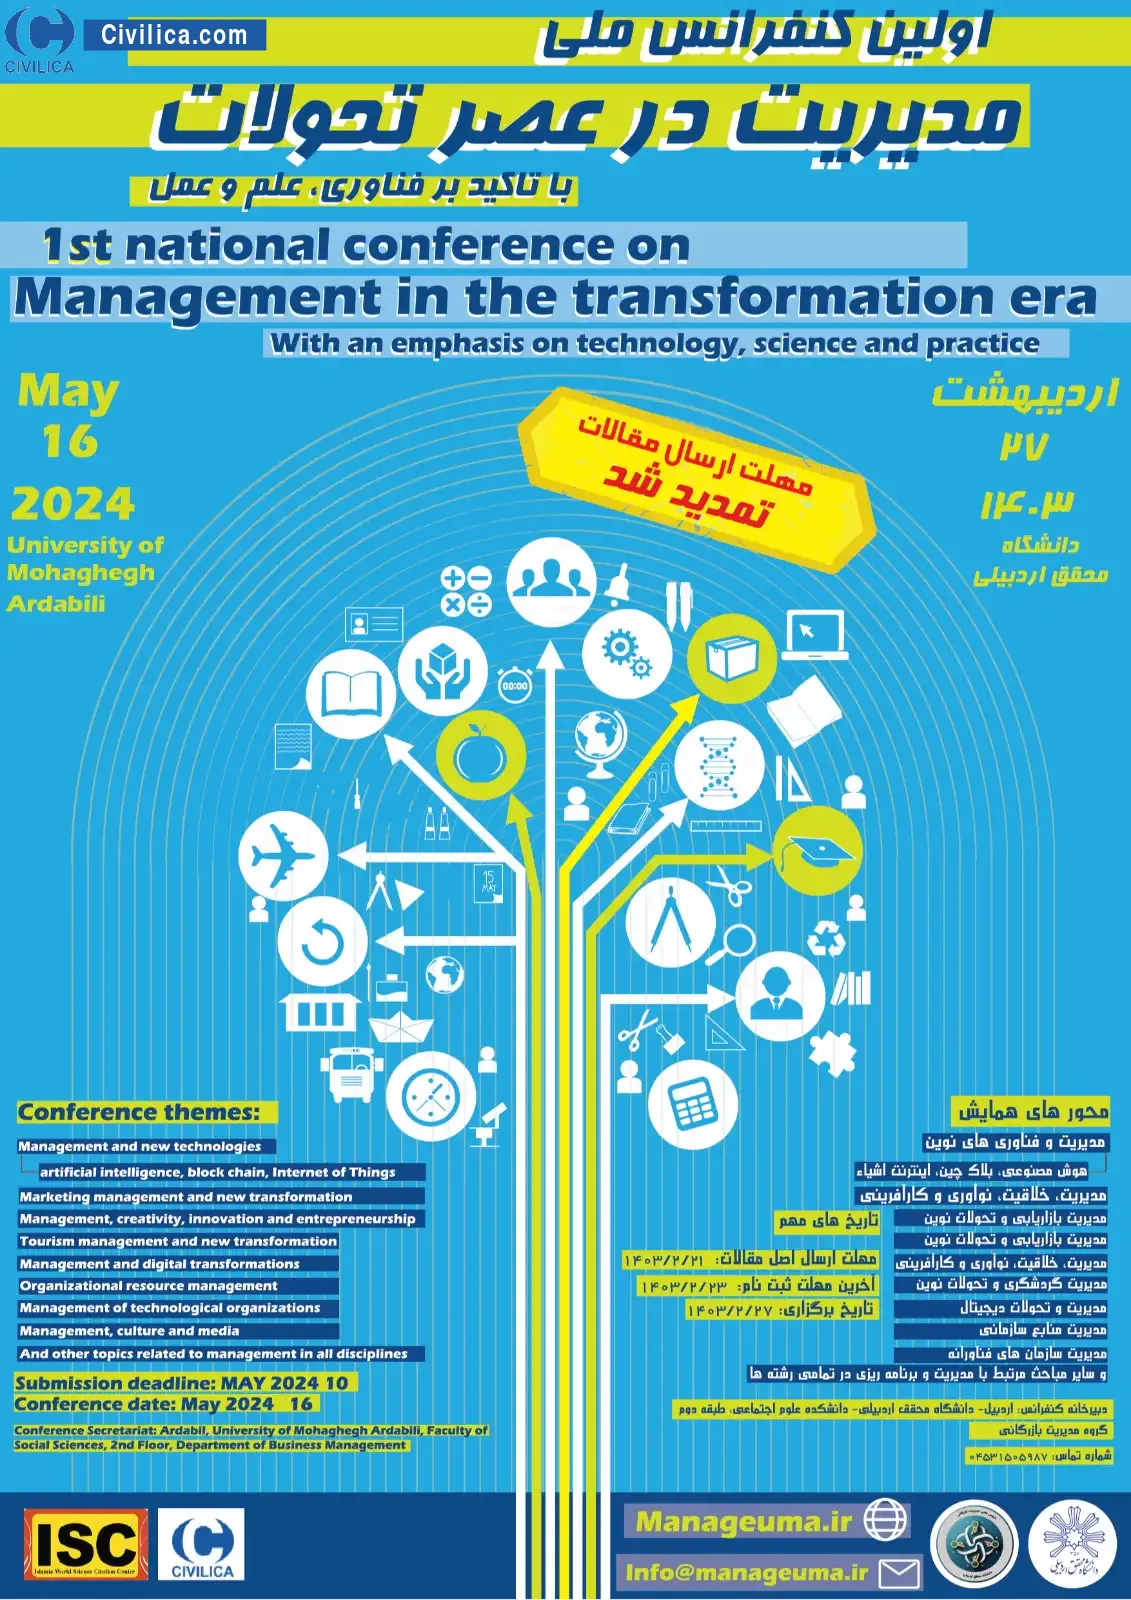 اولین کنفرانس ملی مدیریت در عصر تحولات با تاکید بر فناوری، علم و عمل